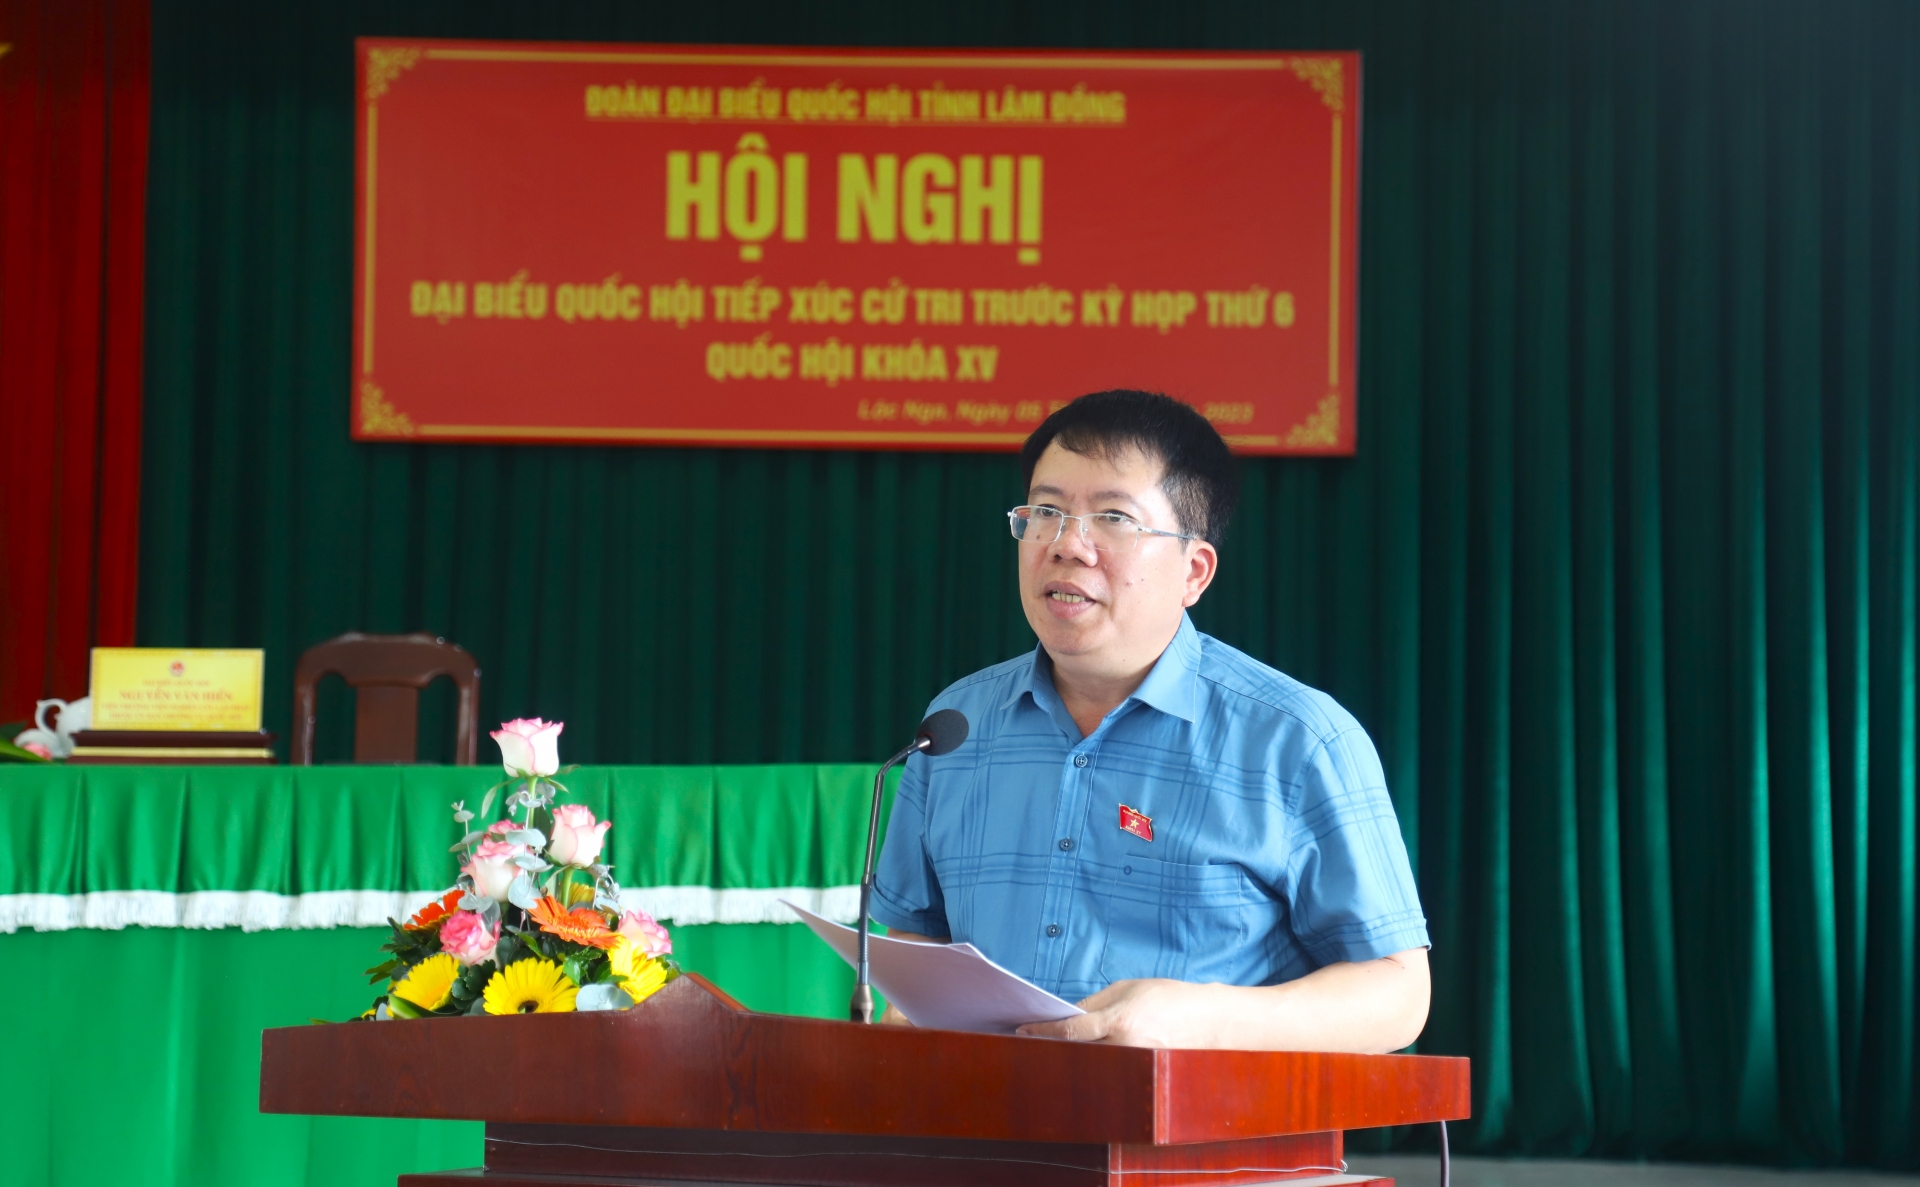 Đồng chí Nguyễn Văn Hiển – Viện trưởng Viện nghiên cứu lập pháp thuộc Ủy ban Thường vụ Quốc hội thông tin tới cử tri những nội dung chủ yếu của Kỳ họp thứ 6, Quốc hội khóa XV